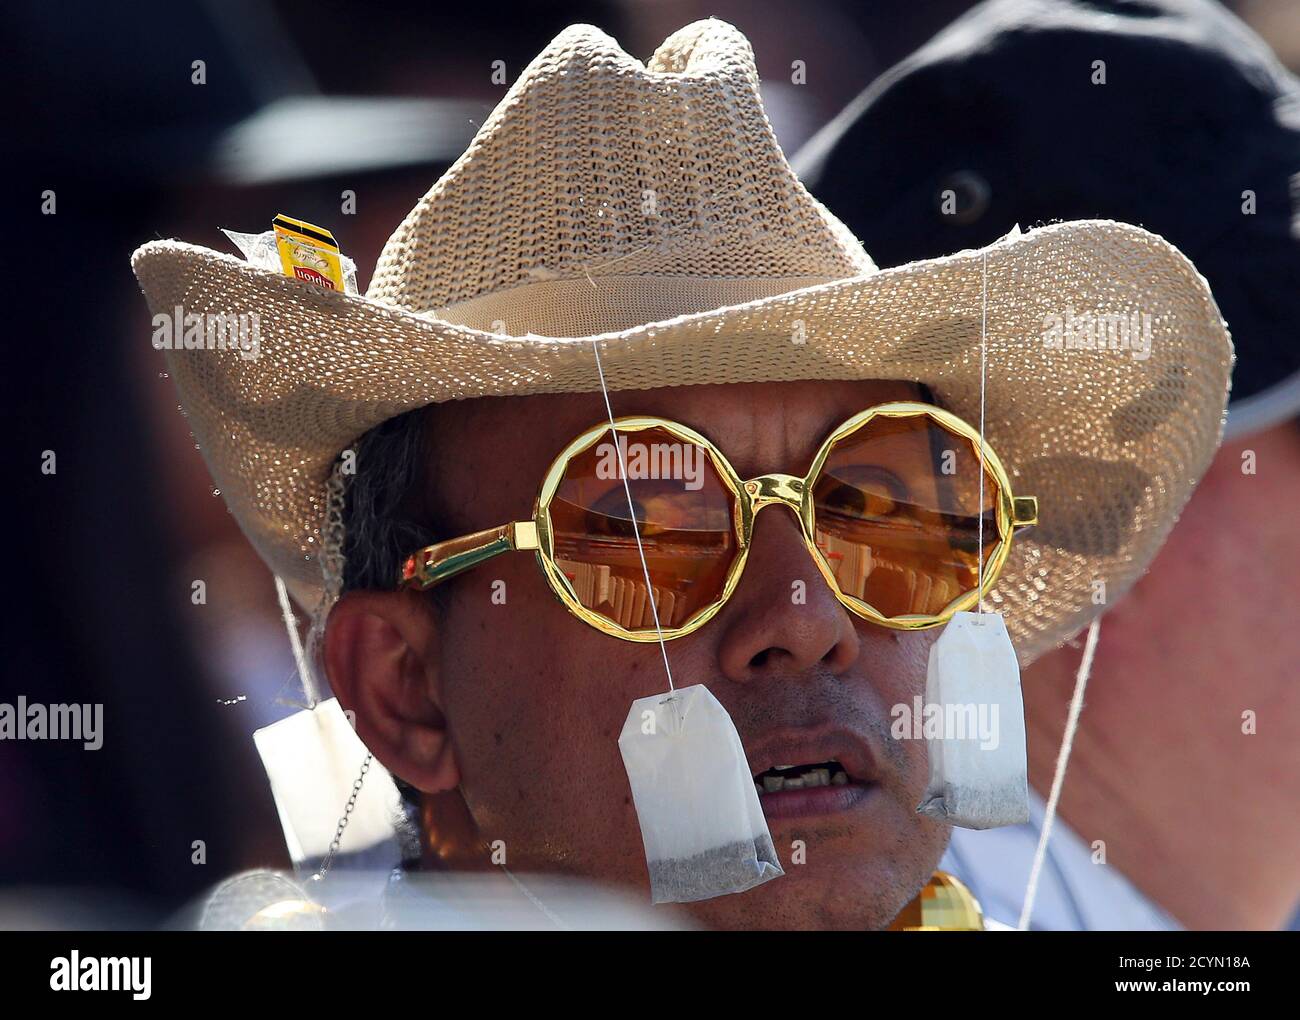 Un uomo indossa un cappello con bustine di tè appese da esso mentre guarda  il quarto finale della Coppa del mondo di Cricket tra Sri Lanka e Sud  Africa al Sydney Cricket